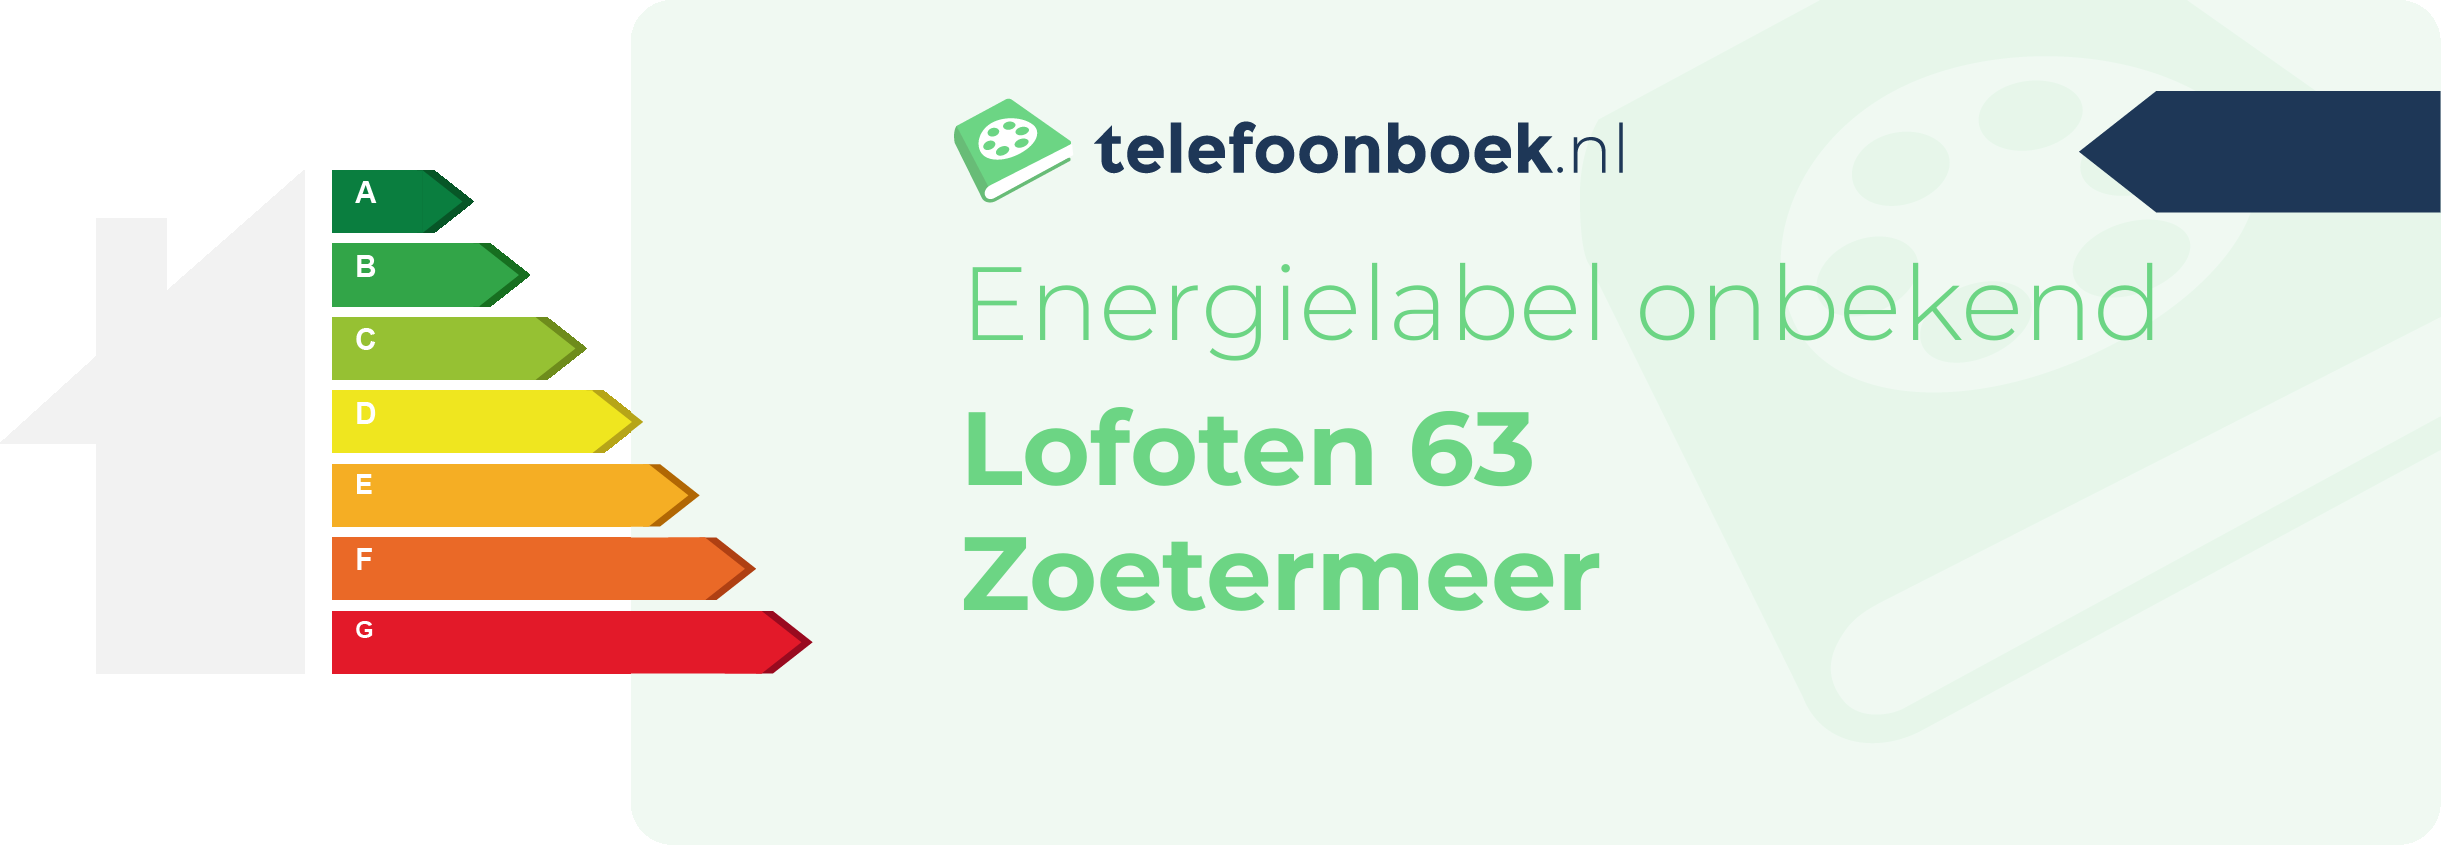 Energielabel Lofoten 63 Zoetermeer